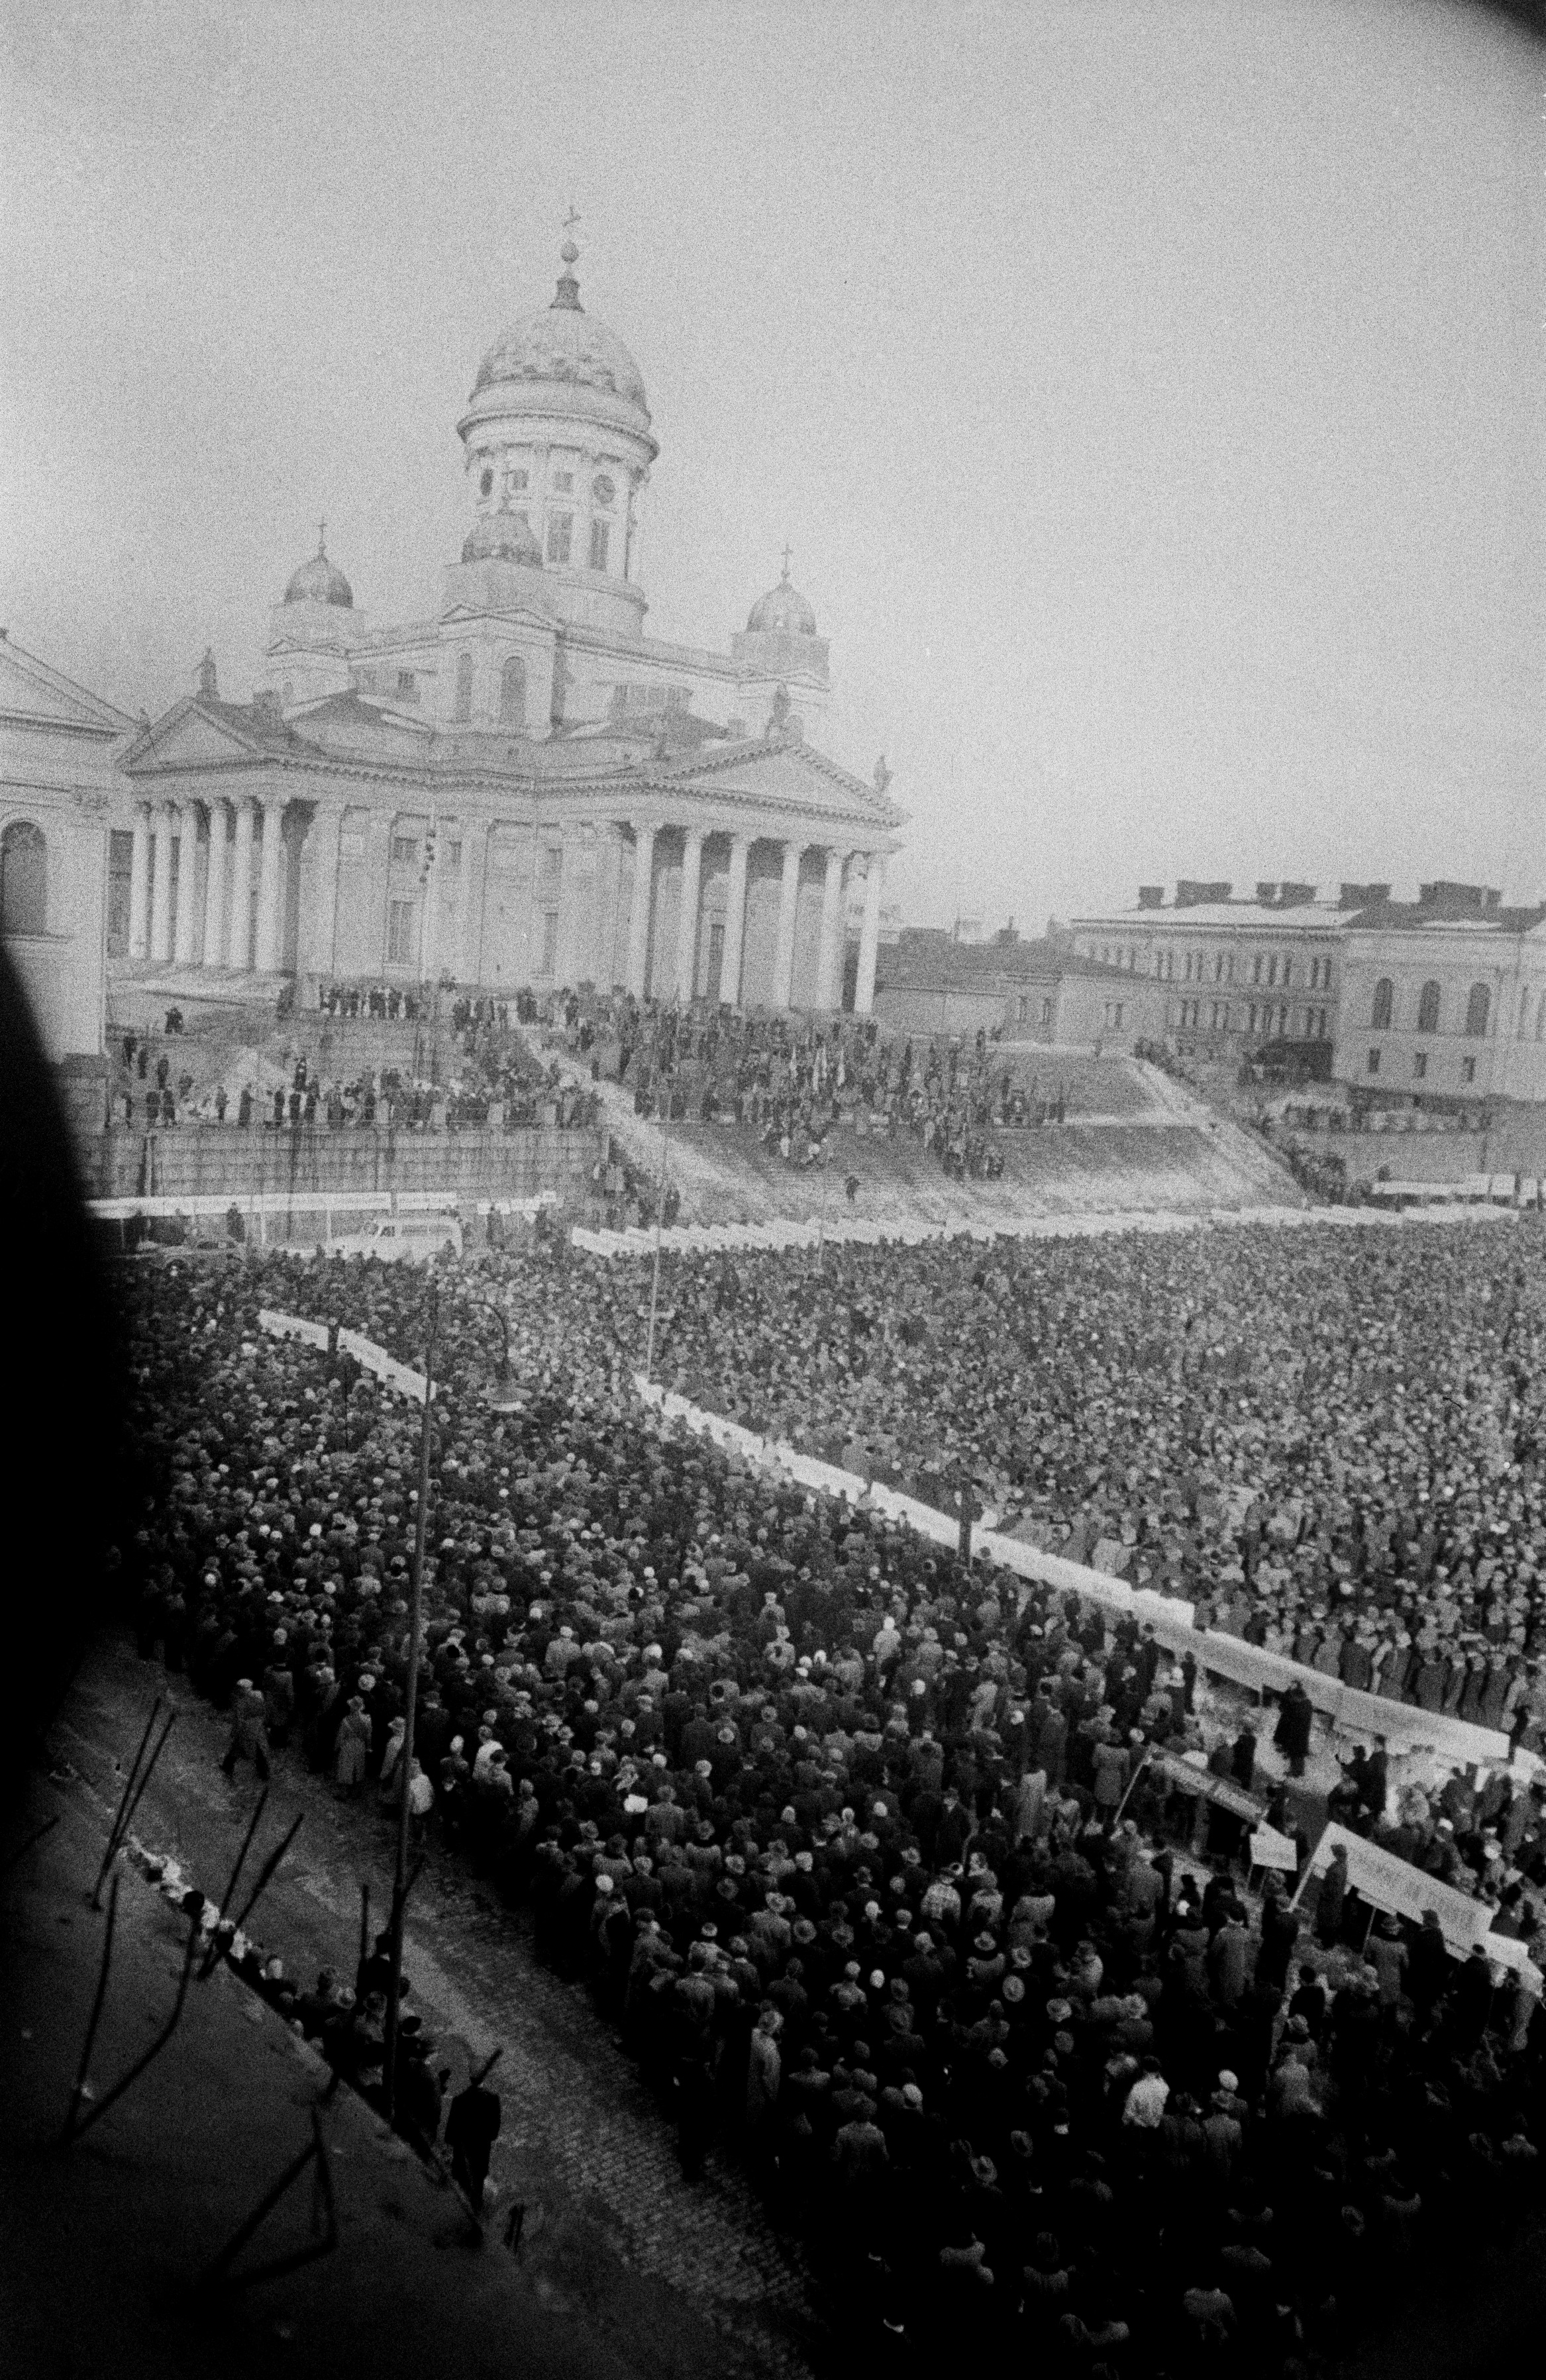 Mielenosoitus yleislakon aikaan Senaatintorilla Suurkirkon (=Helsingin tuomiokirkko) edessä, kuvattu Helsingin yliopiston päärakennuksen ikkunasta.